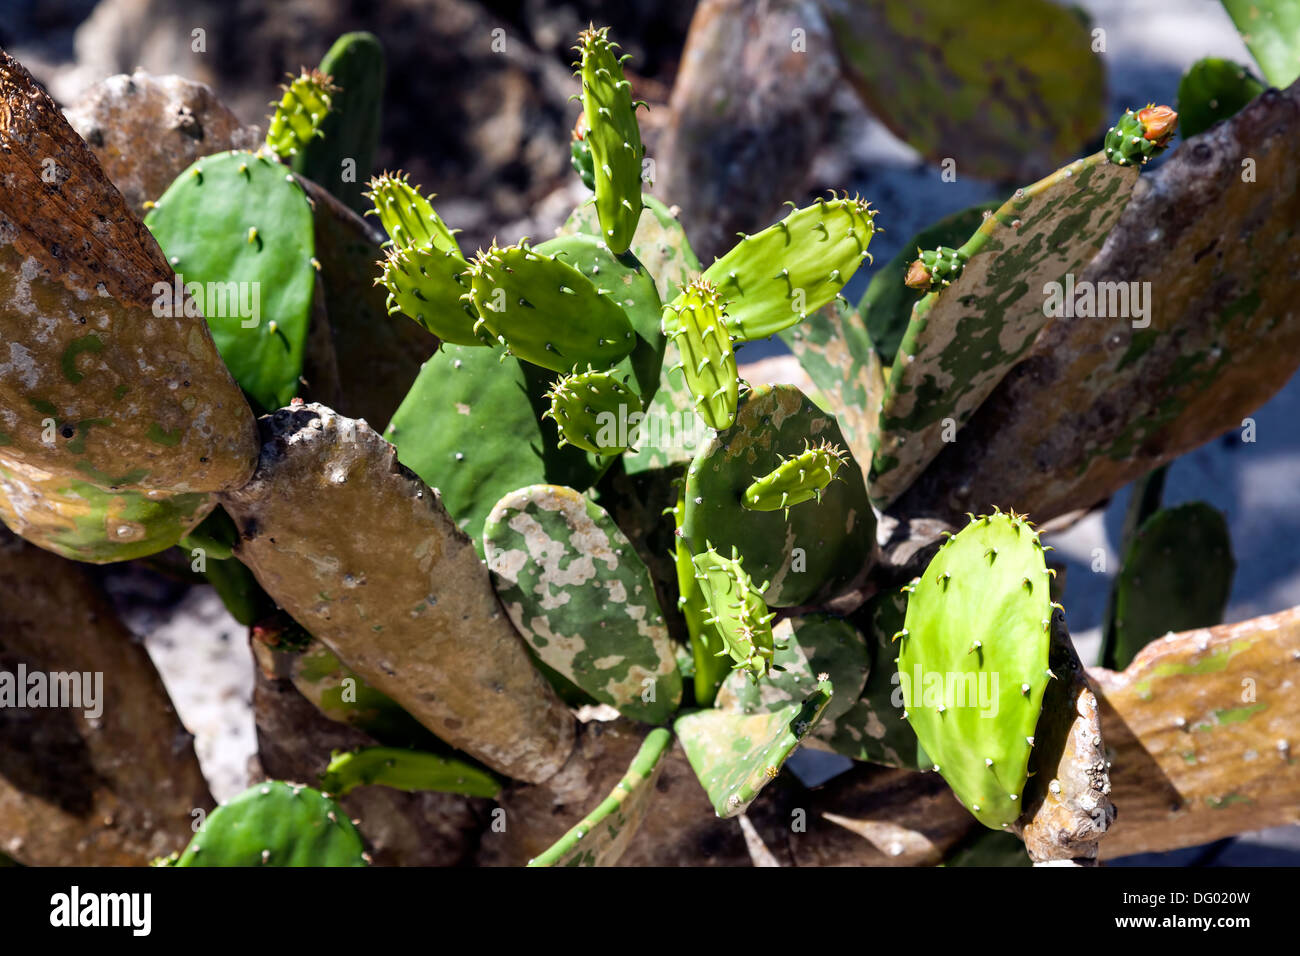 Las hojas o cactus nopales de una hoja plana Nopal cactus llamado. Foto de stock